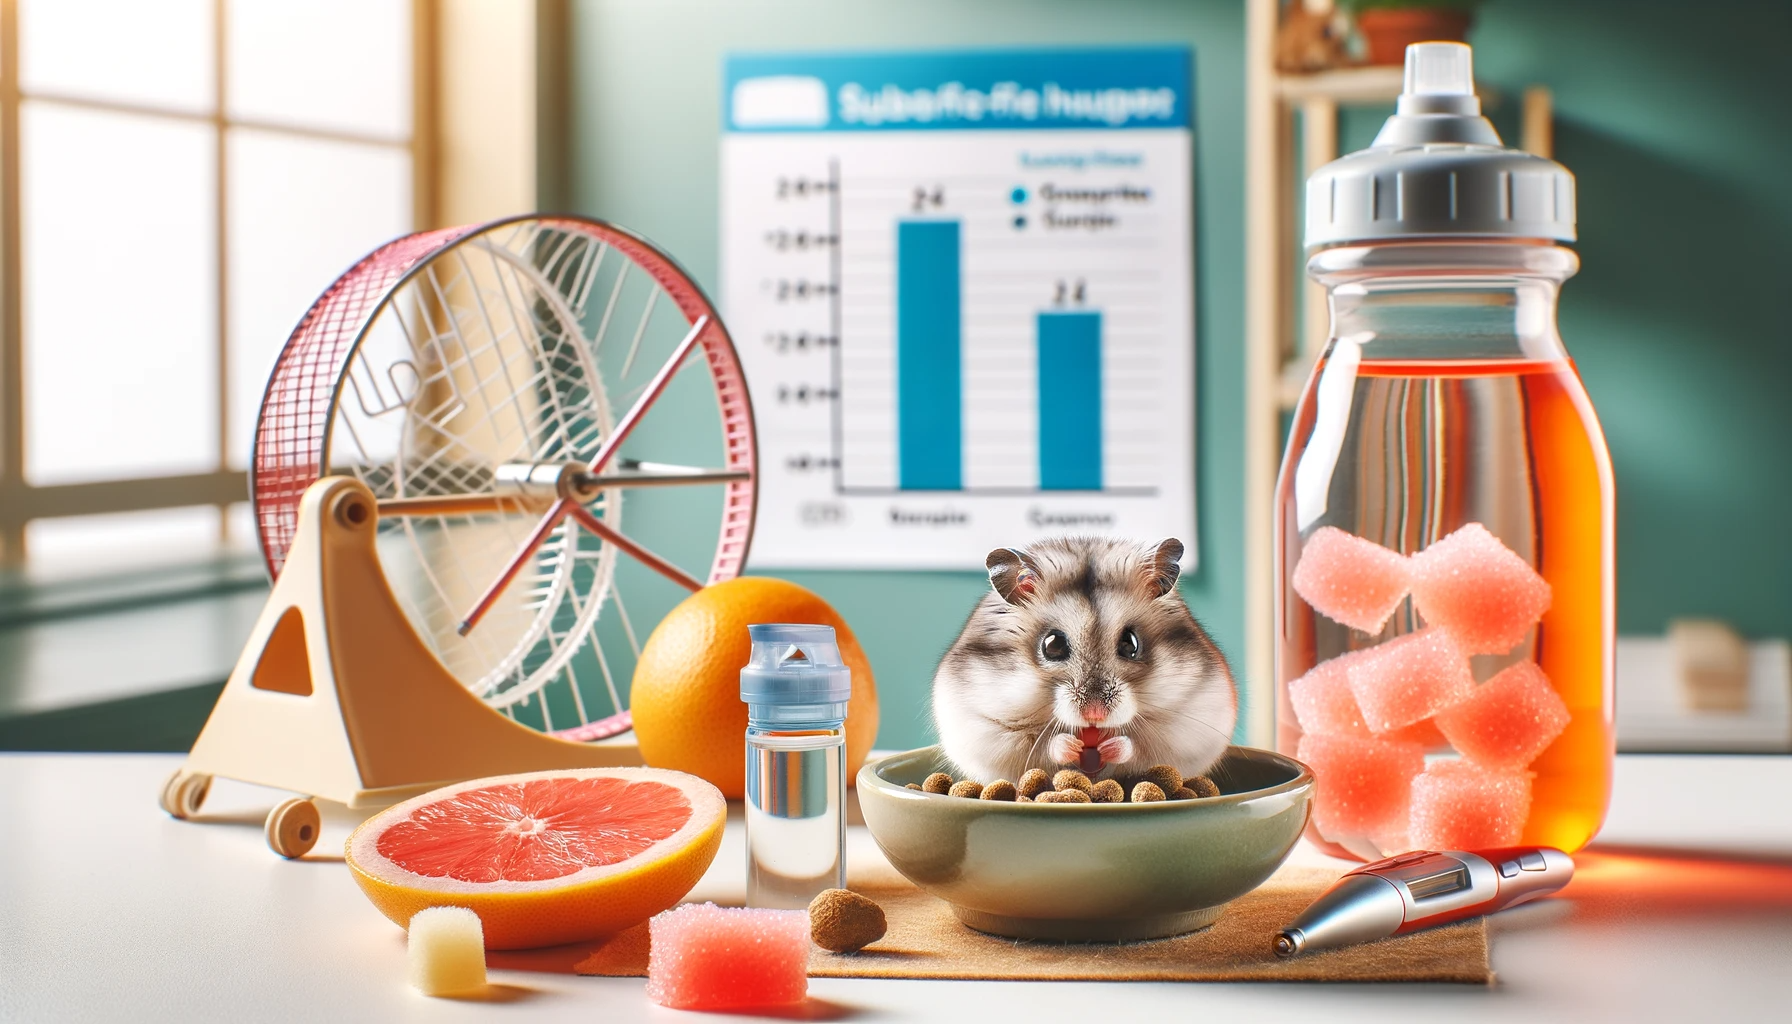 Addressing Diabetes in Hamsters